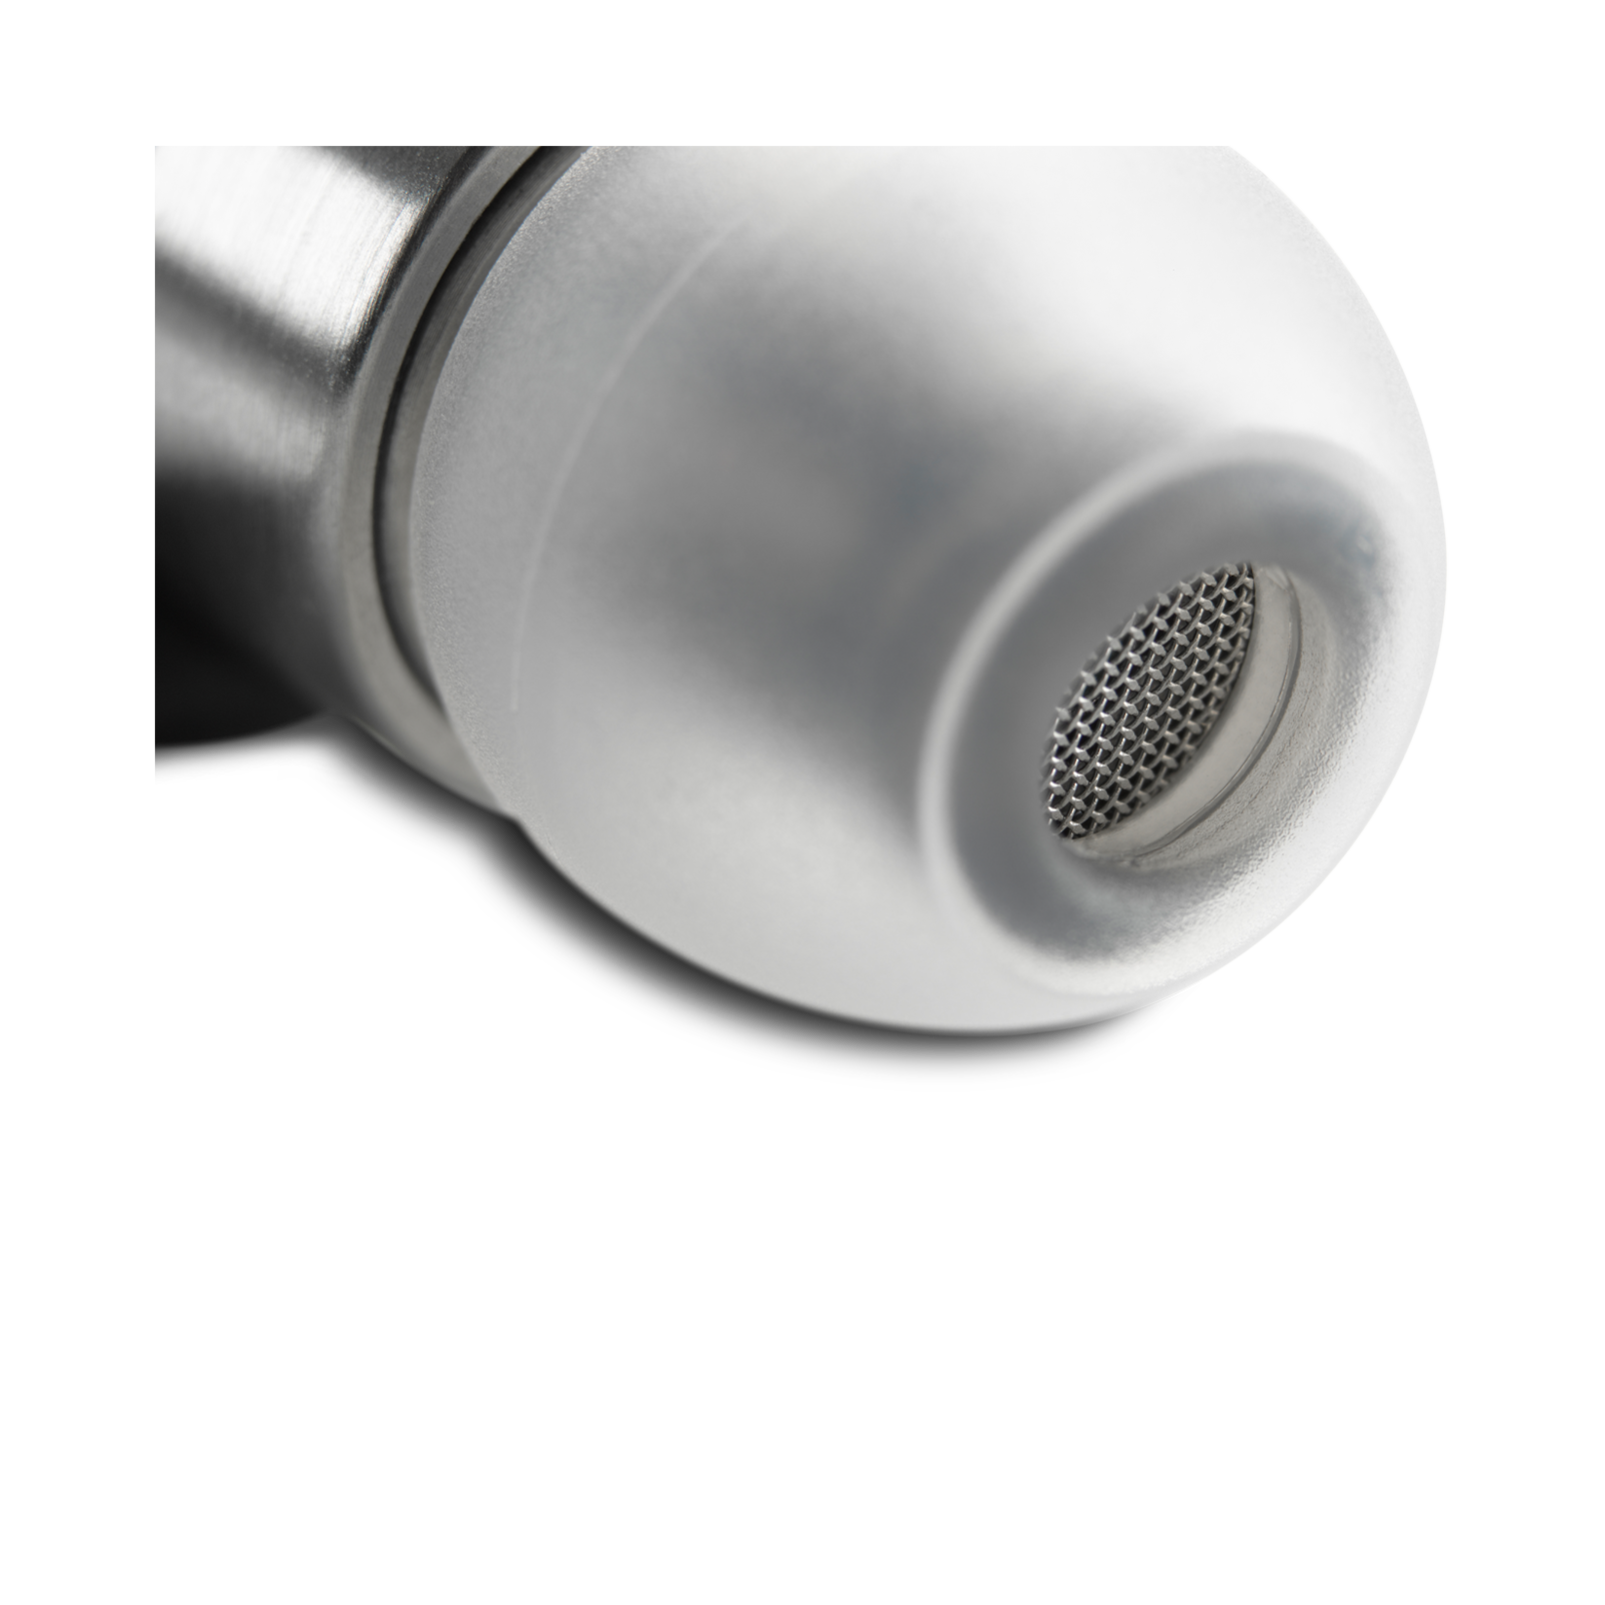 K3003 - Aluminum - Reference class 3-way earphones delivering leyu reference sound. - Detailshot 1